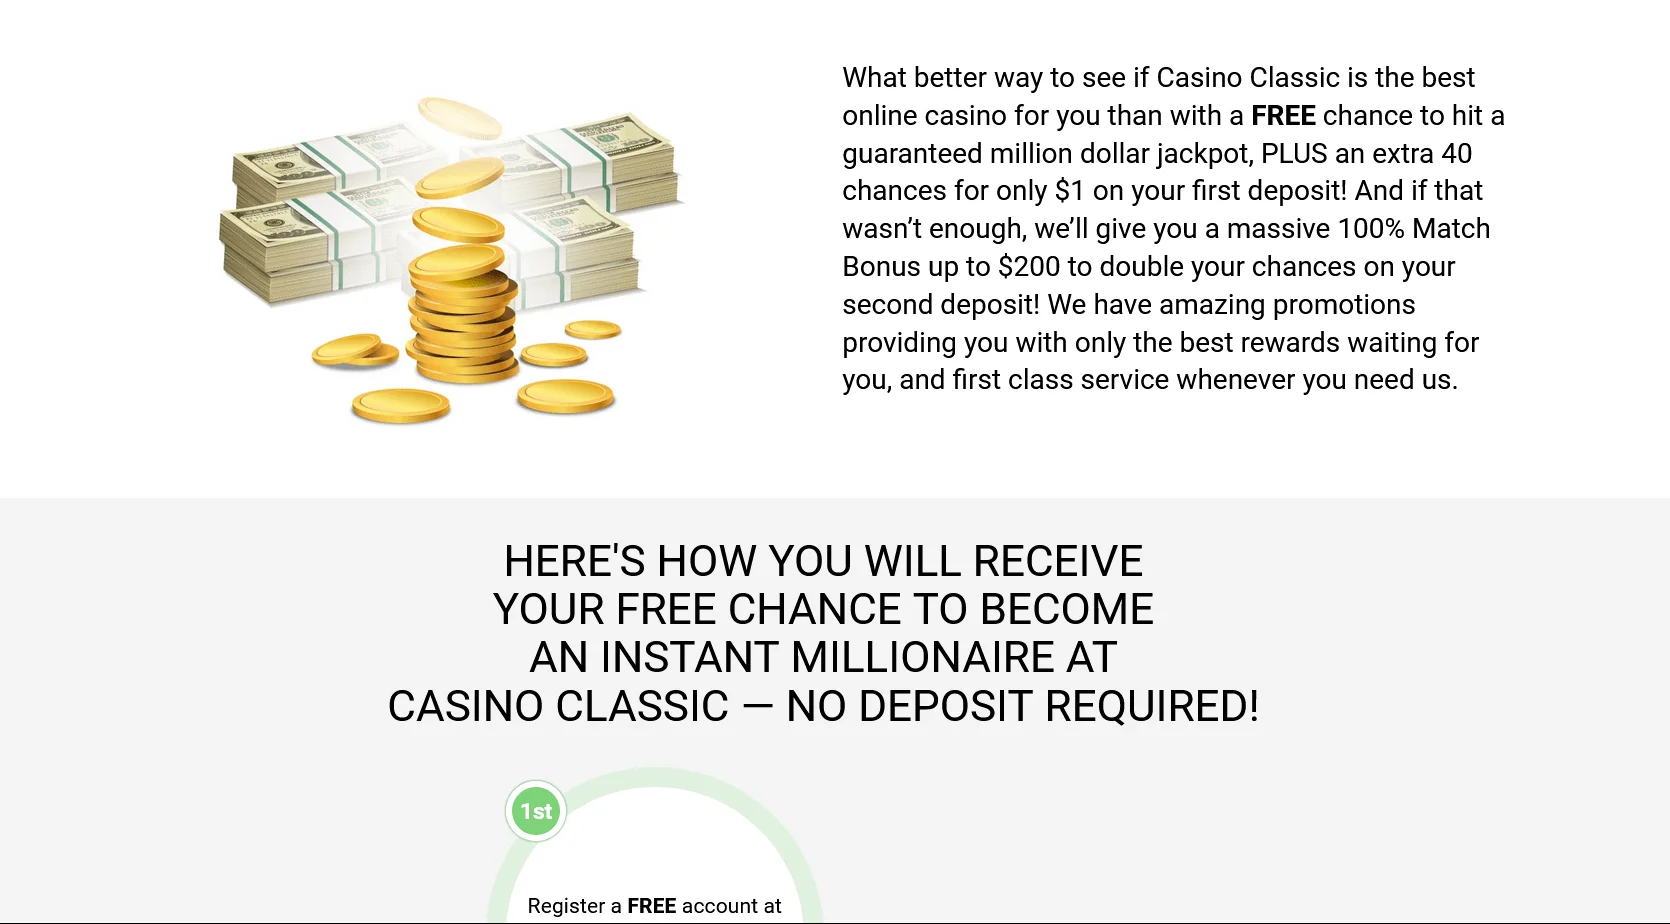 Οι διαθέσιμες μέθοδοι κατάθεσης και ανάληψης χρημάτων στον ιστότοπο του Casino Classic